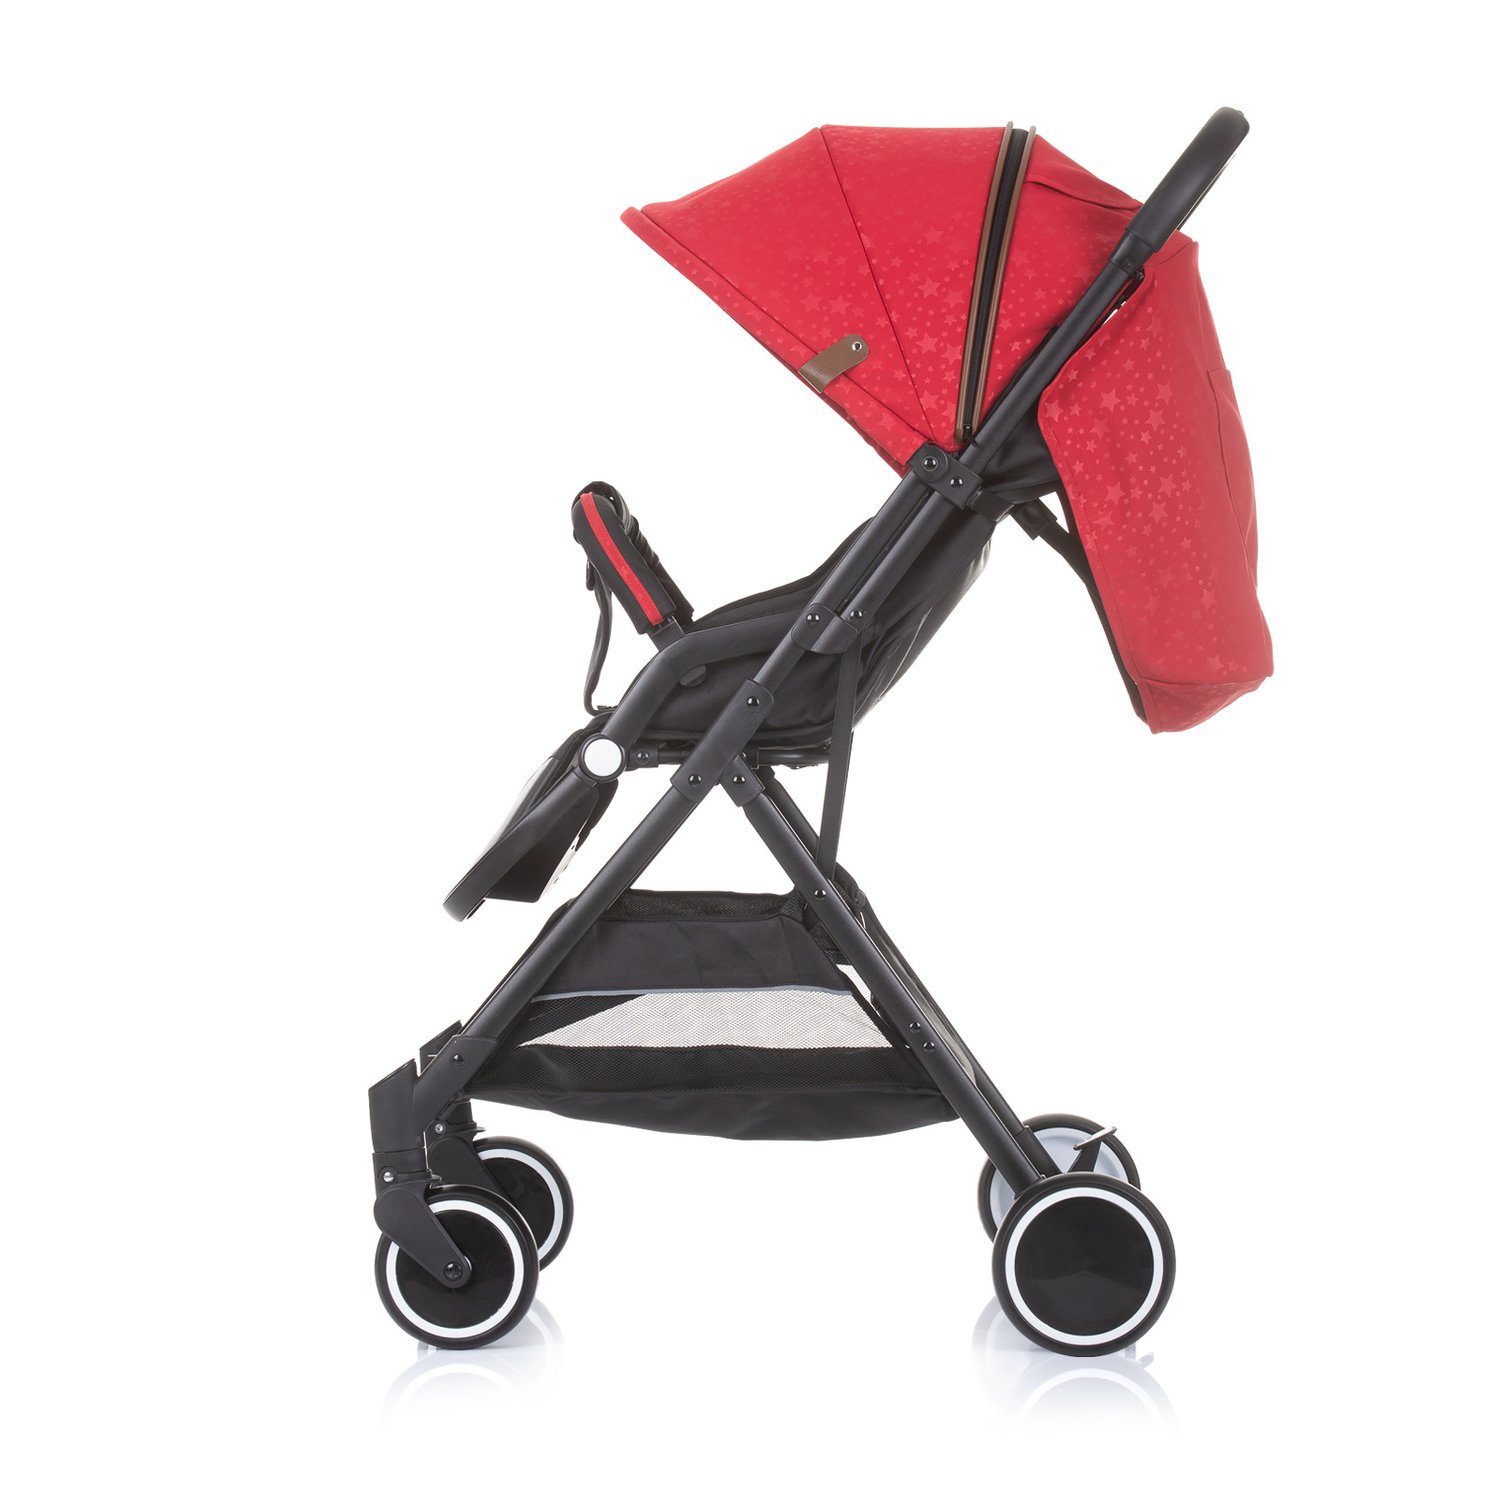 Chipolino Kinder-Buggy Sonnendach Rückenlehne Clarice, Kinderwagen klappbar verstellbar rot Buggy